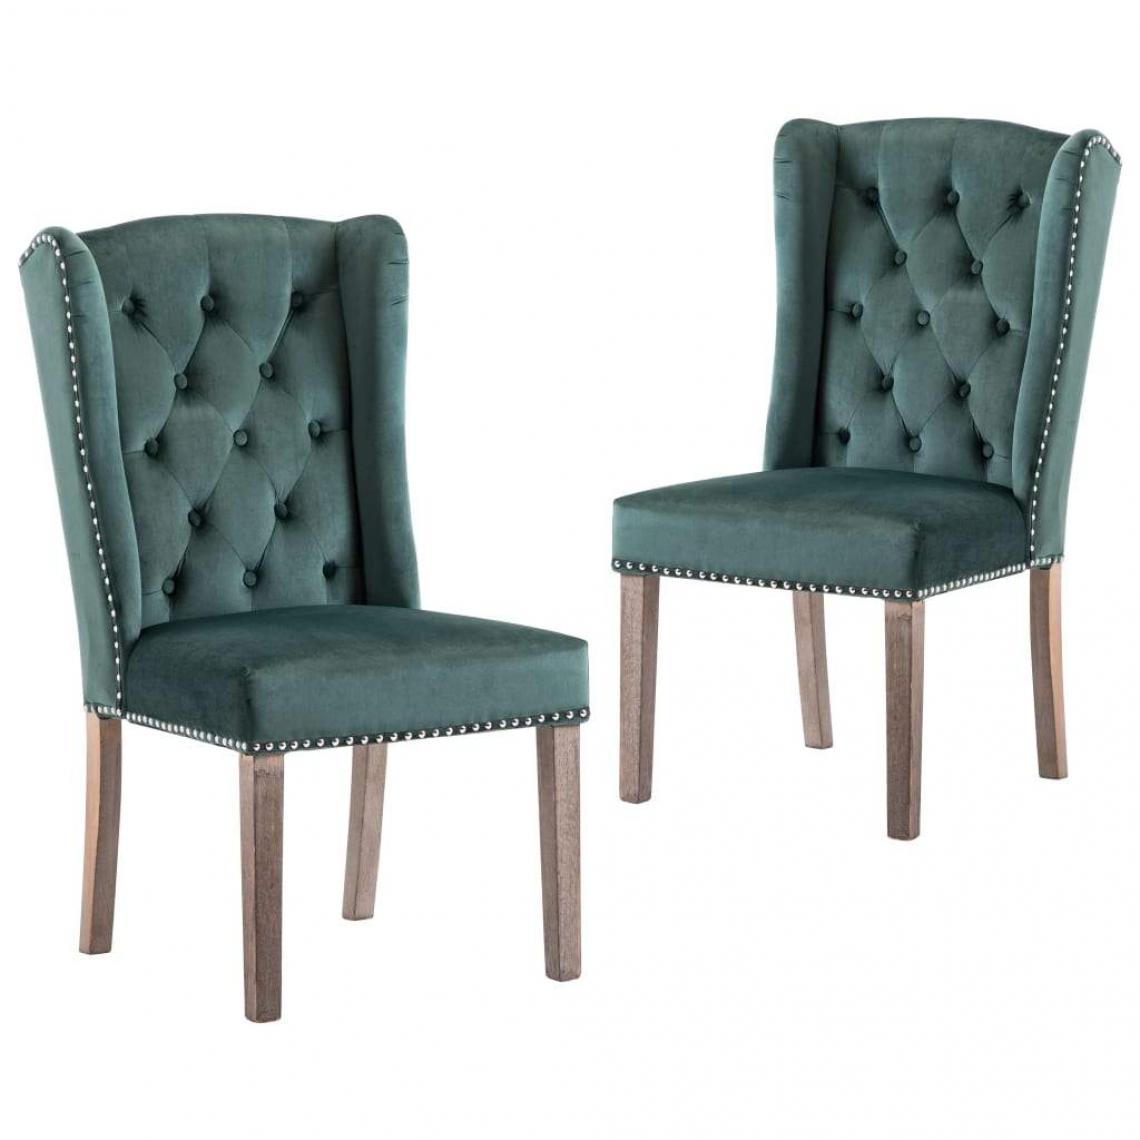 Decoshop26 - Lot de 2 chaises de salle à manger cuisine design classique velours vert foncé CDS021087 - Chaises